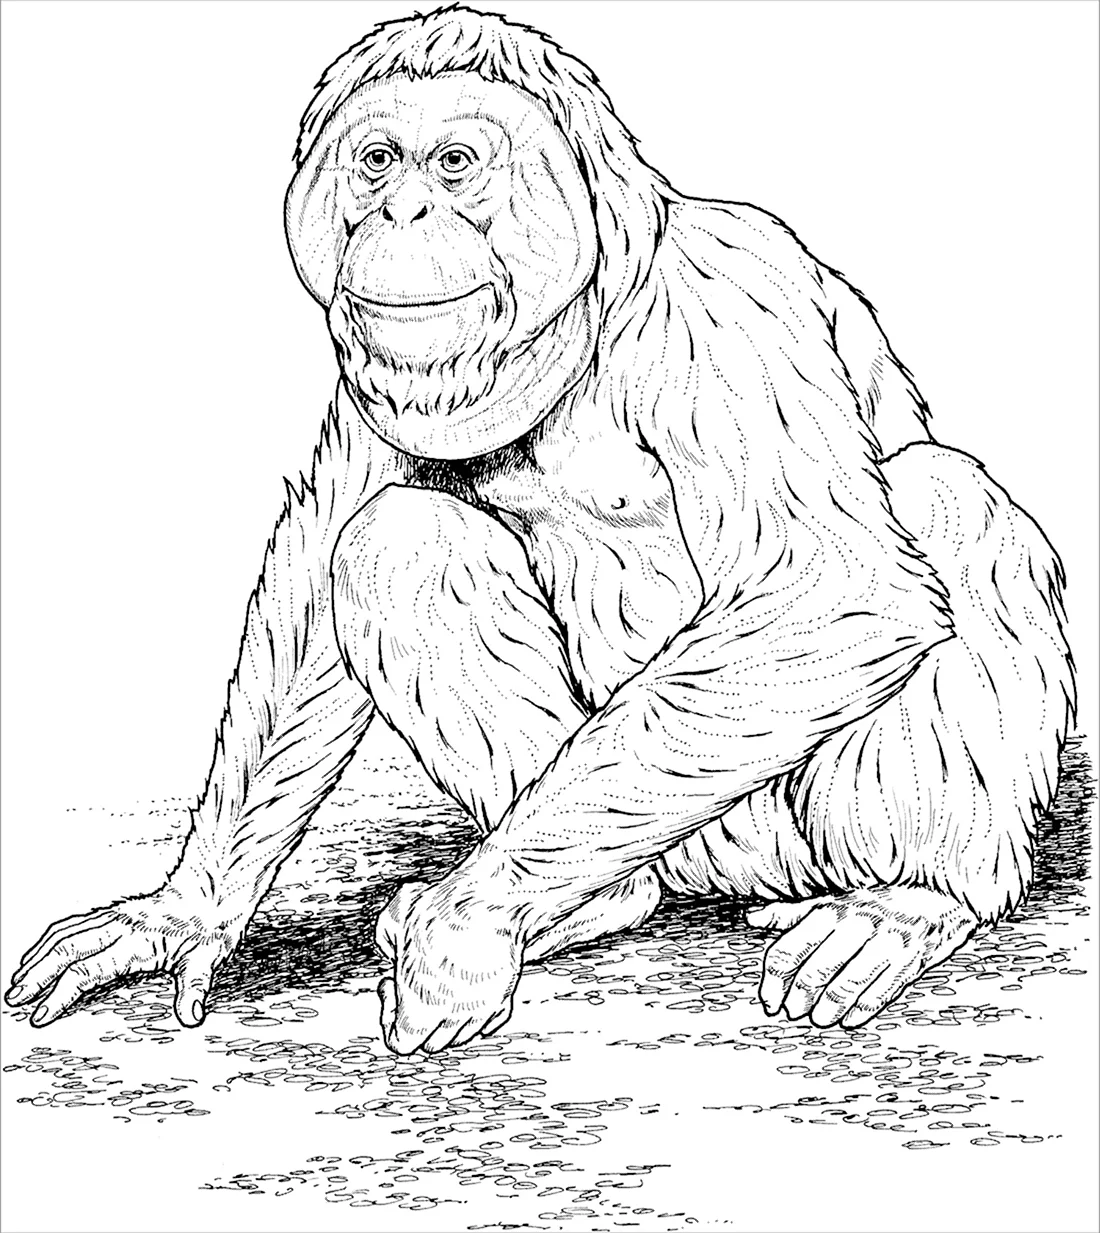 Гиббон орангутанг горилла и шимпанзе человекообразные обезьяны